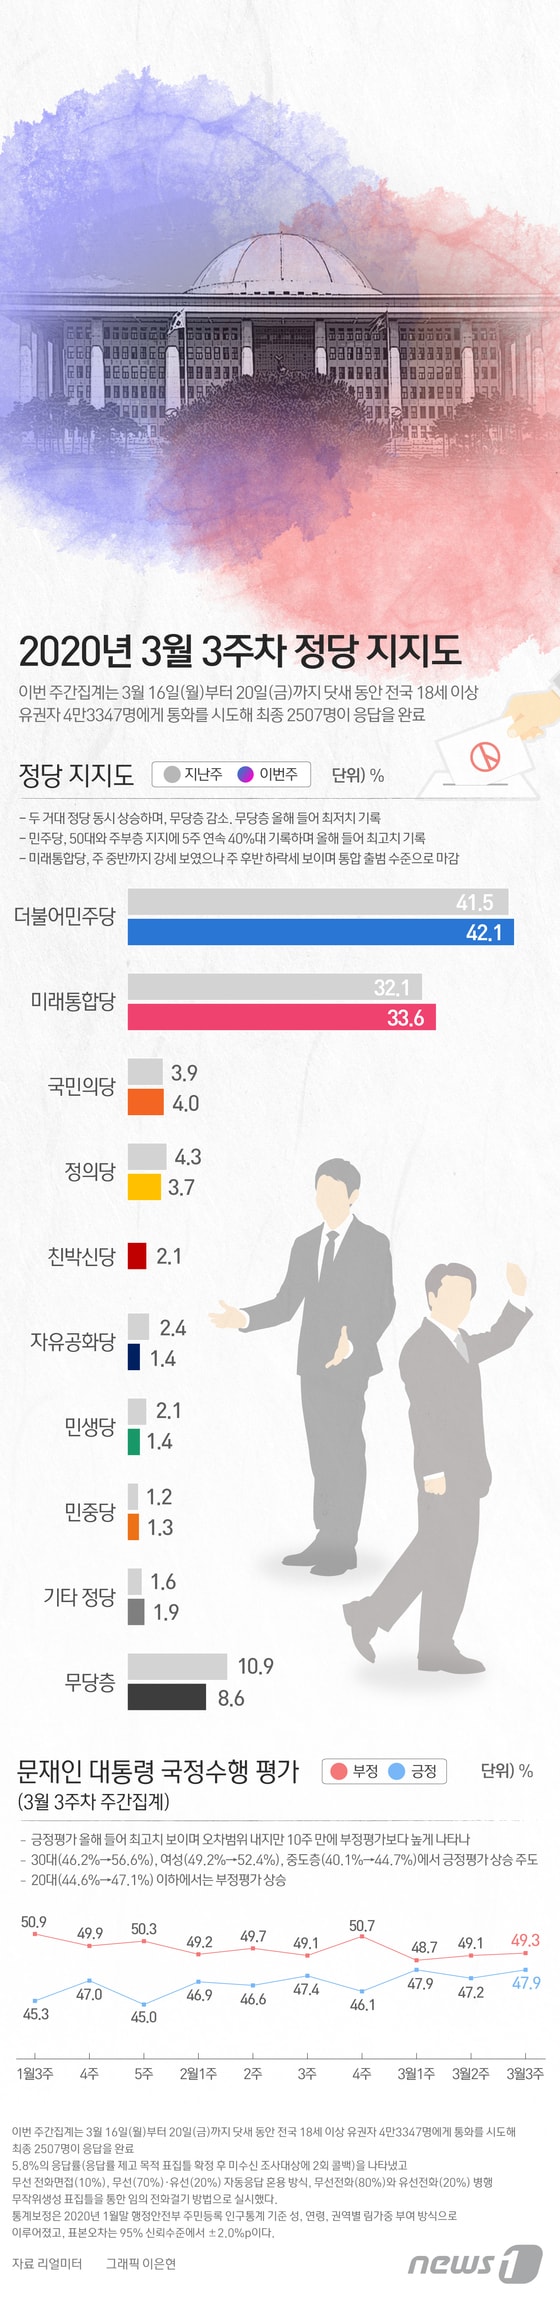 [그래픽뉴스] 3월 3주차 정당 지지도